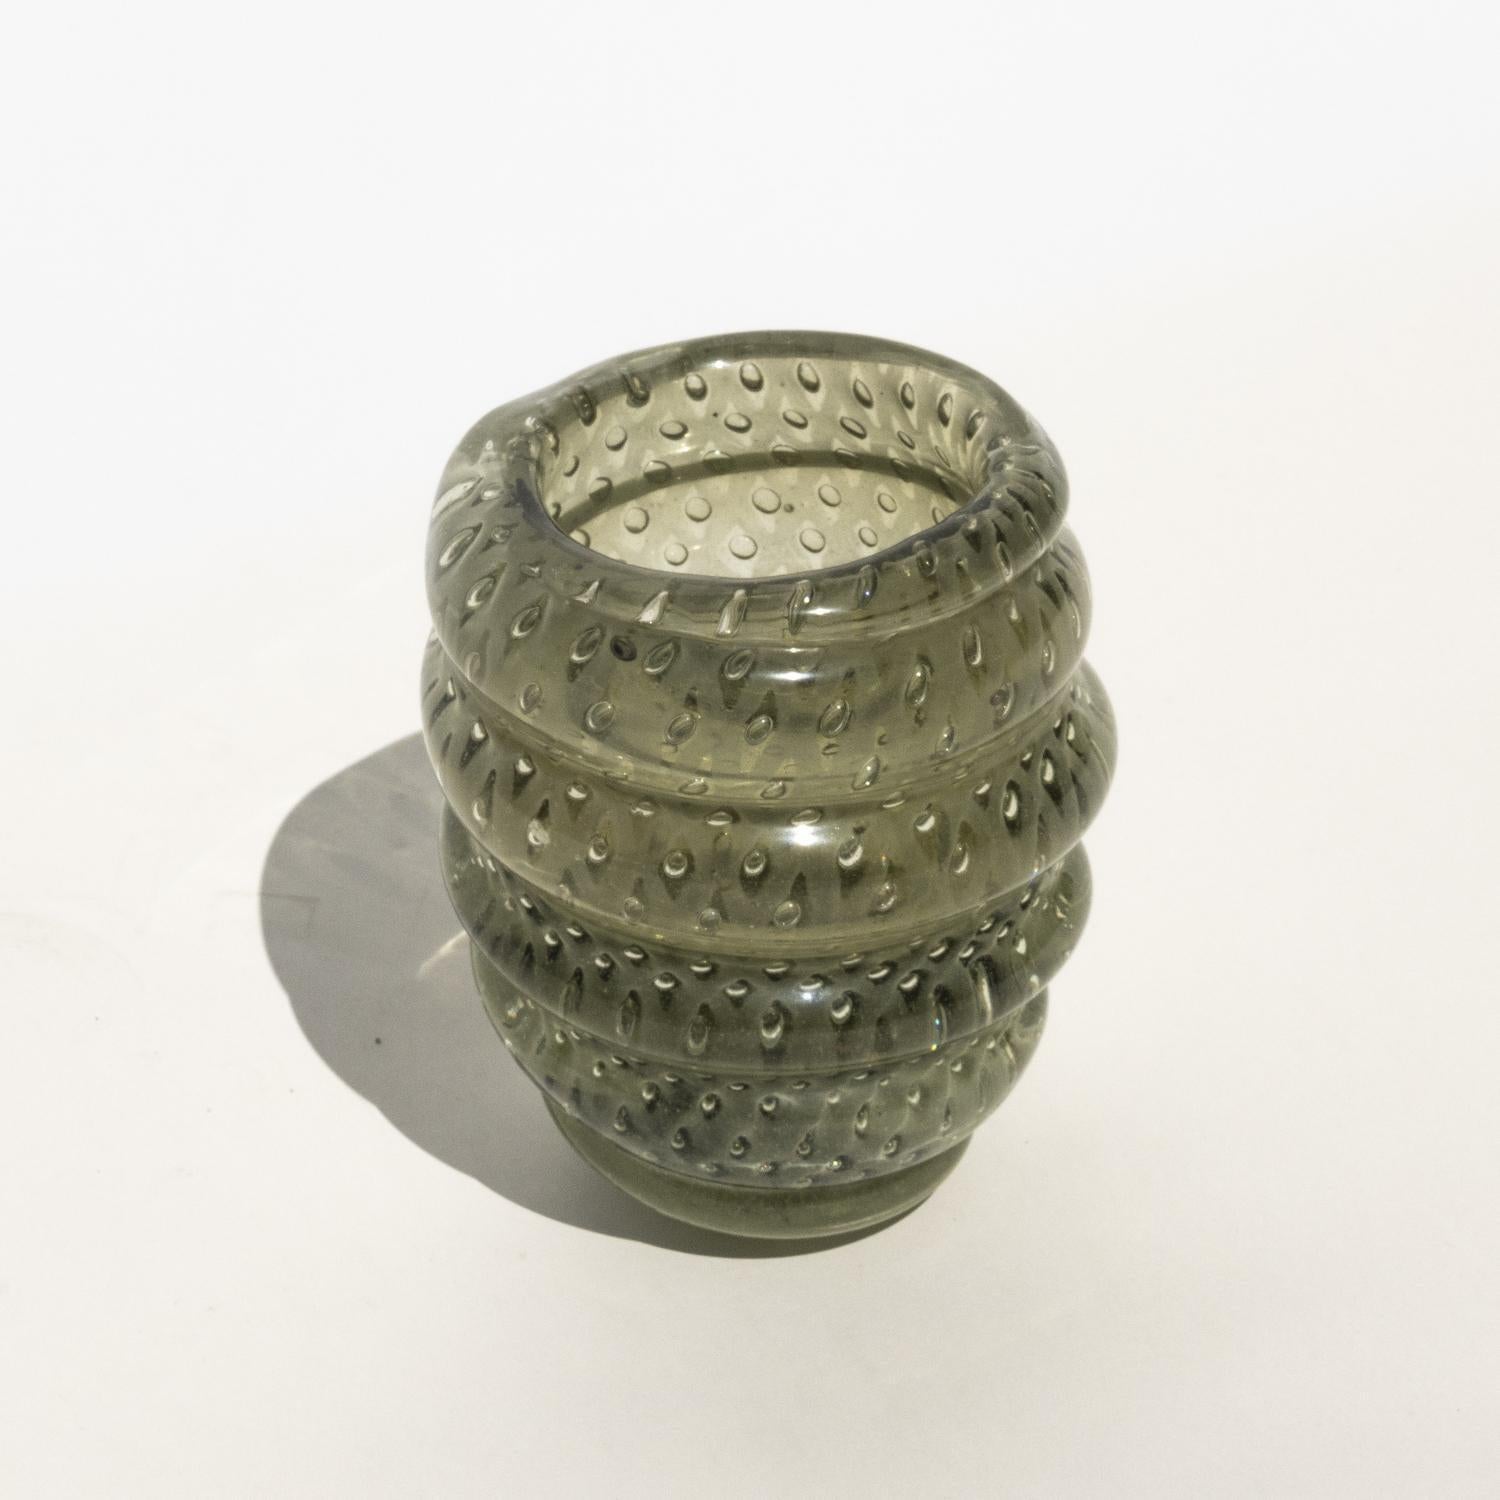 Vasen aus Murano-Glas boten Designern schon immer die Möglichkeit, frei mit Farben, Formen, Mustern und Texturen zu experimentieren. Von hauchdünnen, filigranen Vasen wie der 